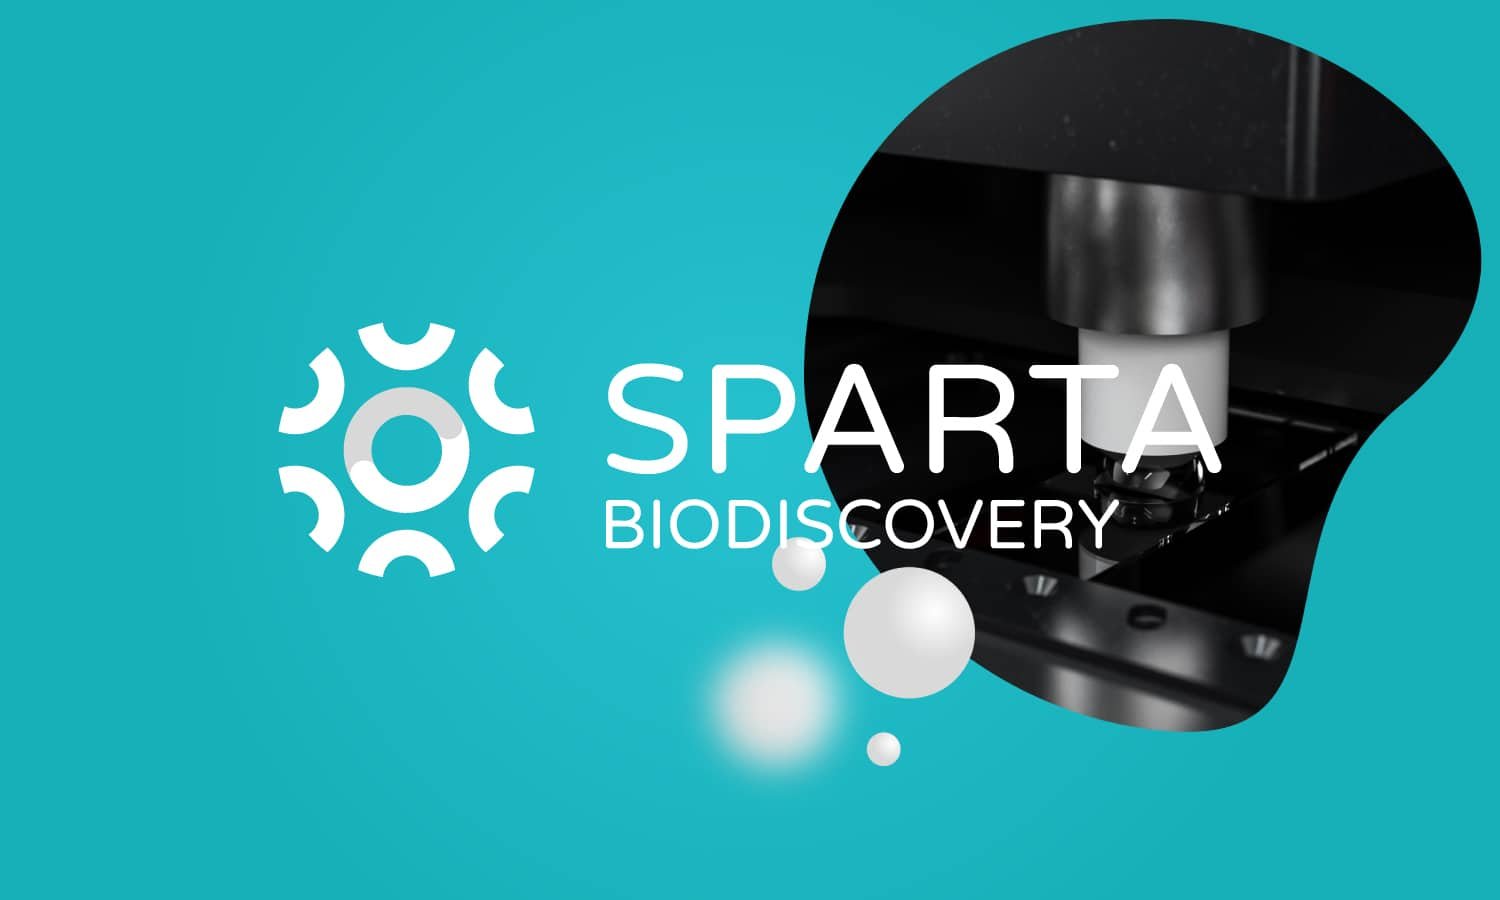 SPARTA Biodiscovery